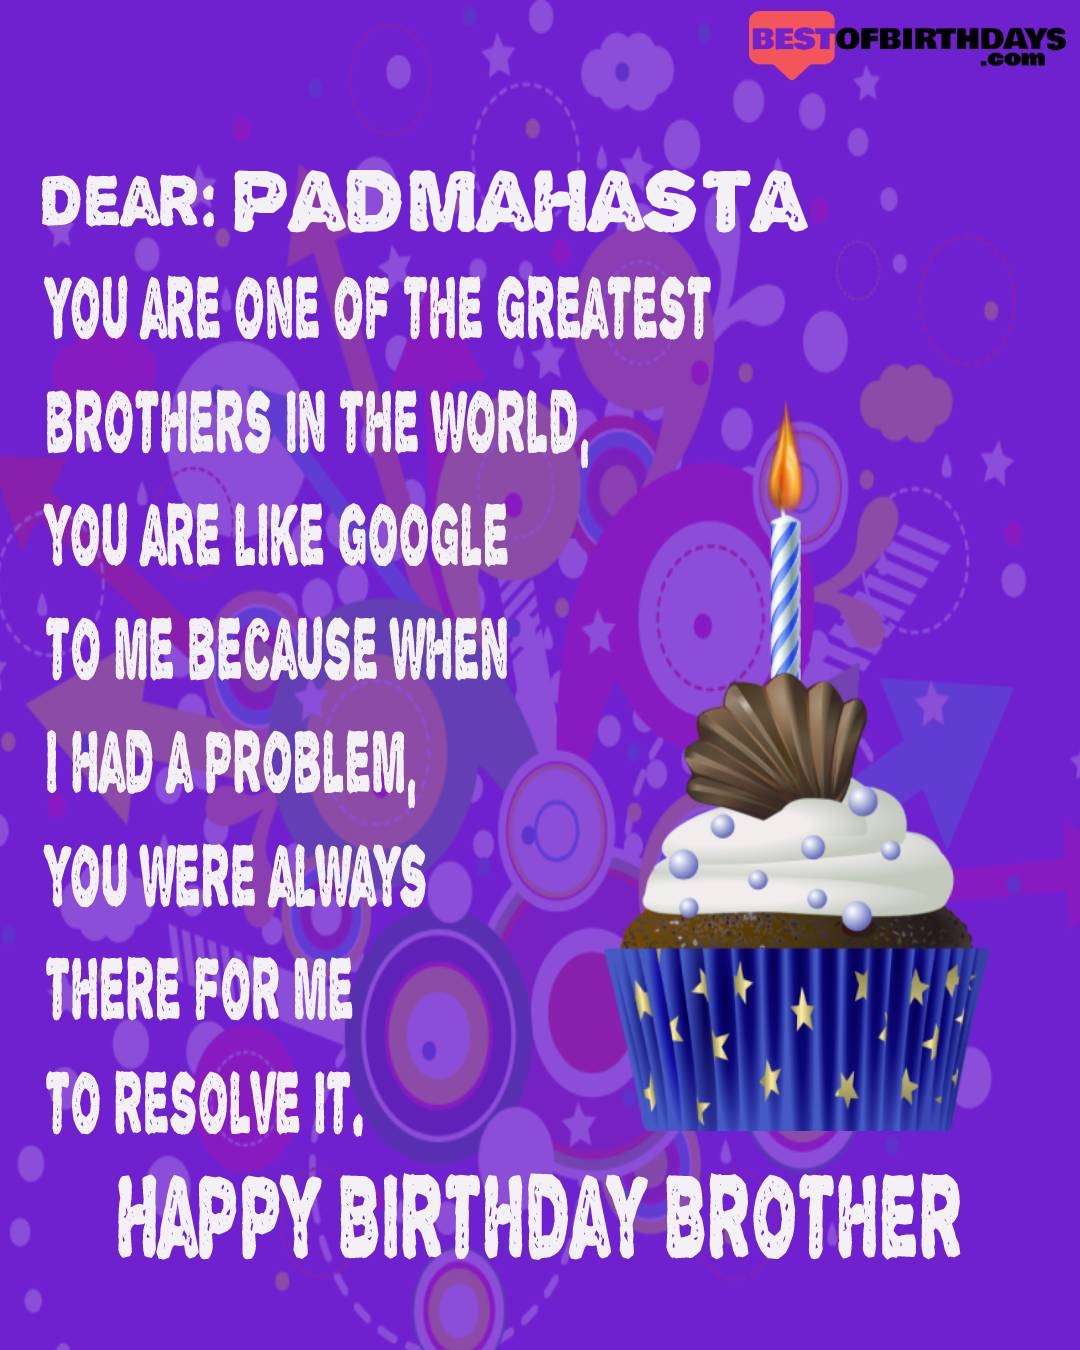 Happy birthday padmahasta bhai brother bro